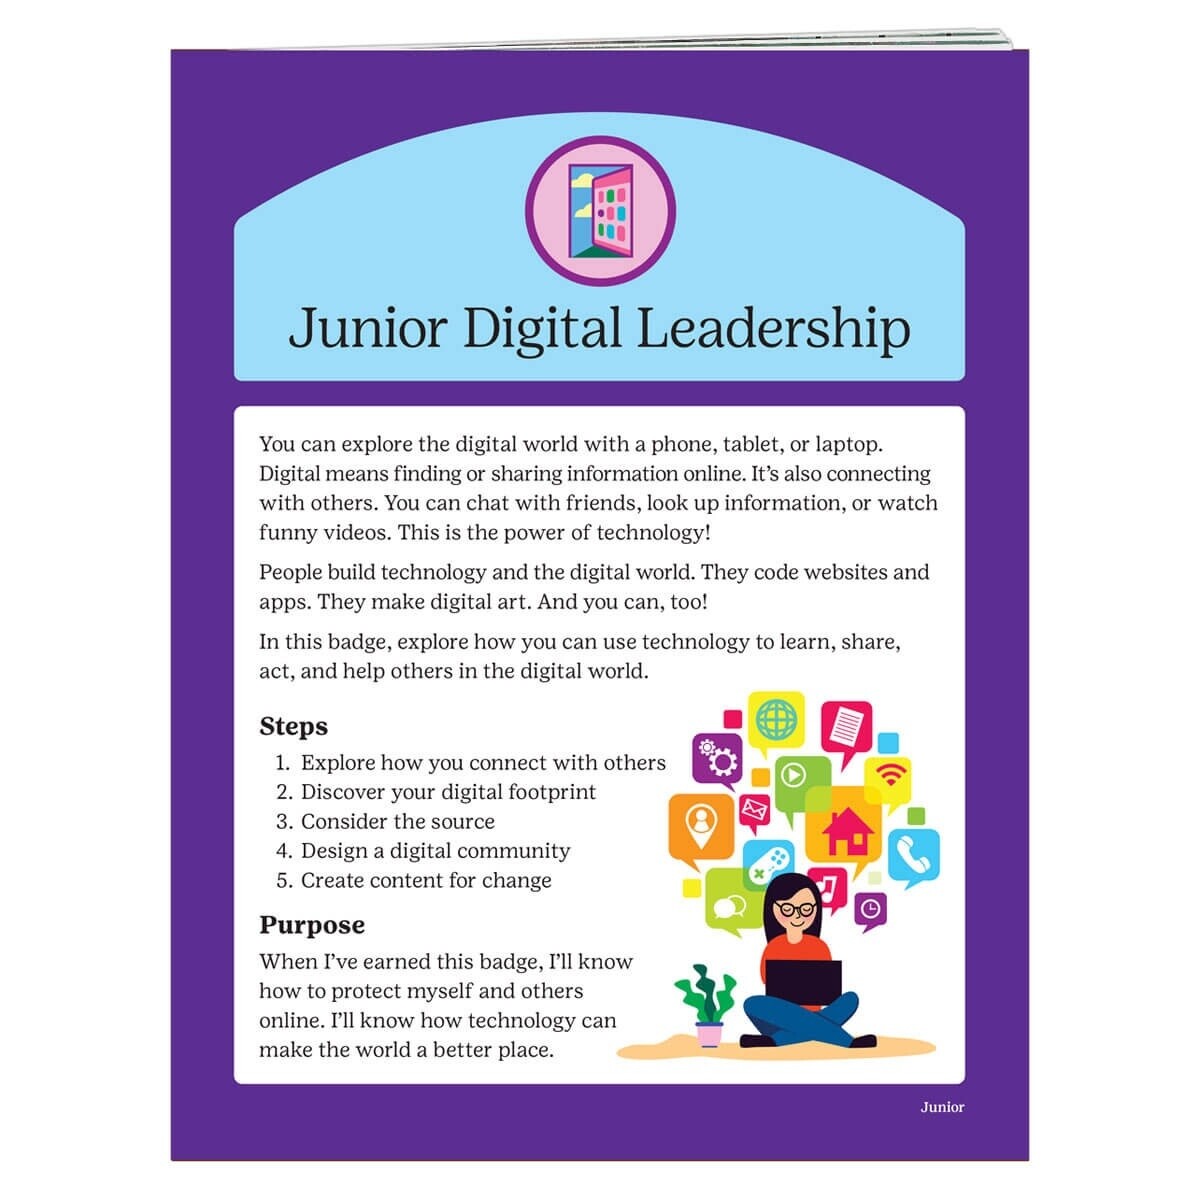 Junior Digital Leadership Badge Requirements